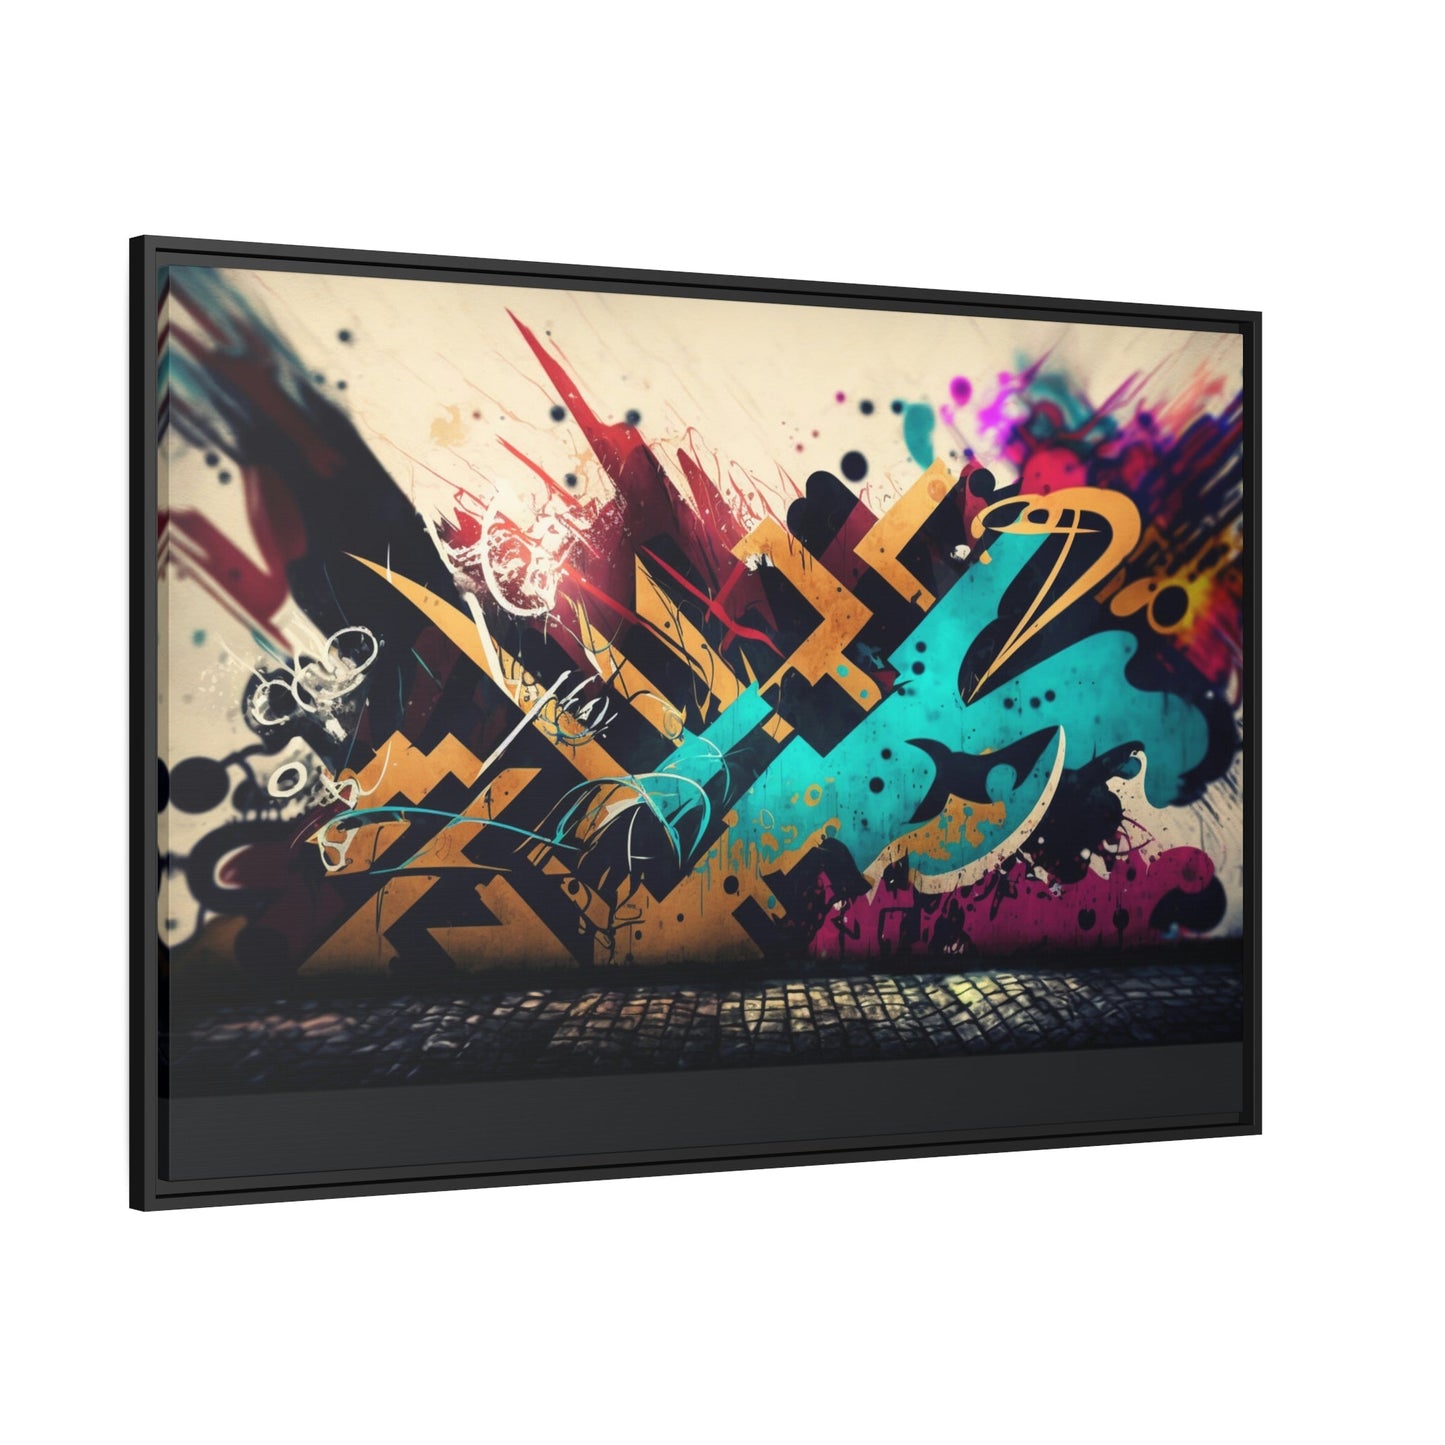 Framed Canvas & Poster Print of Graffiti Art: A Burst of Energy